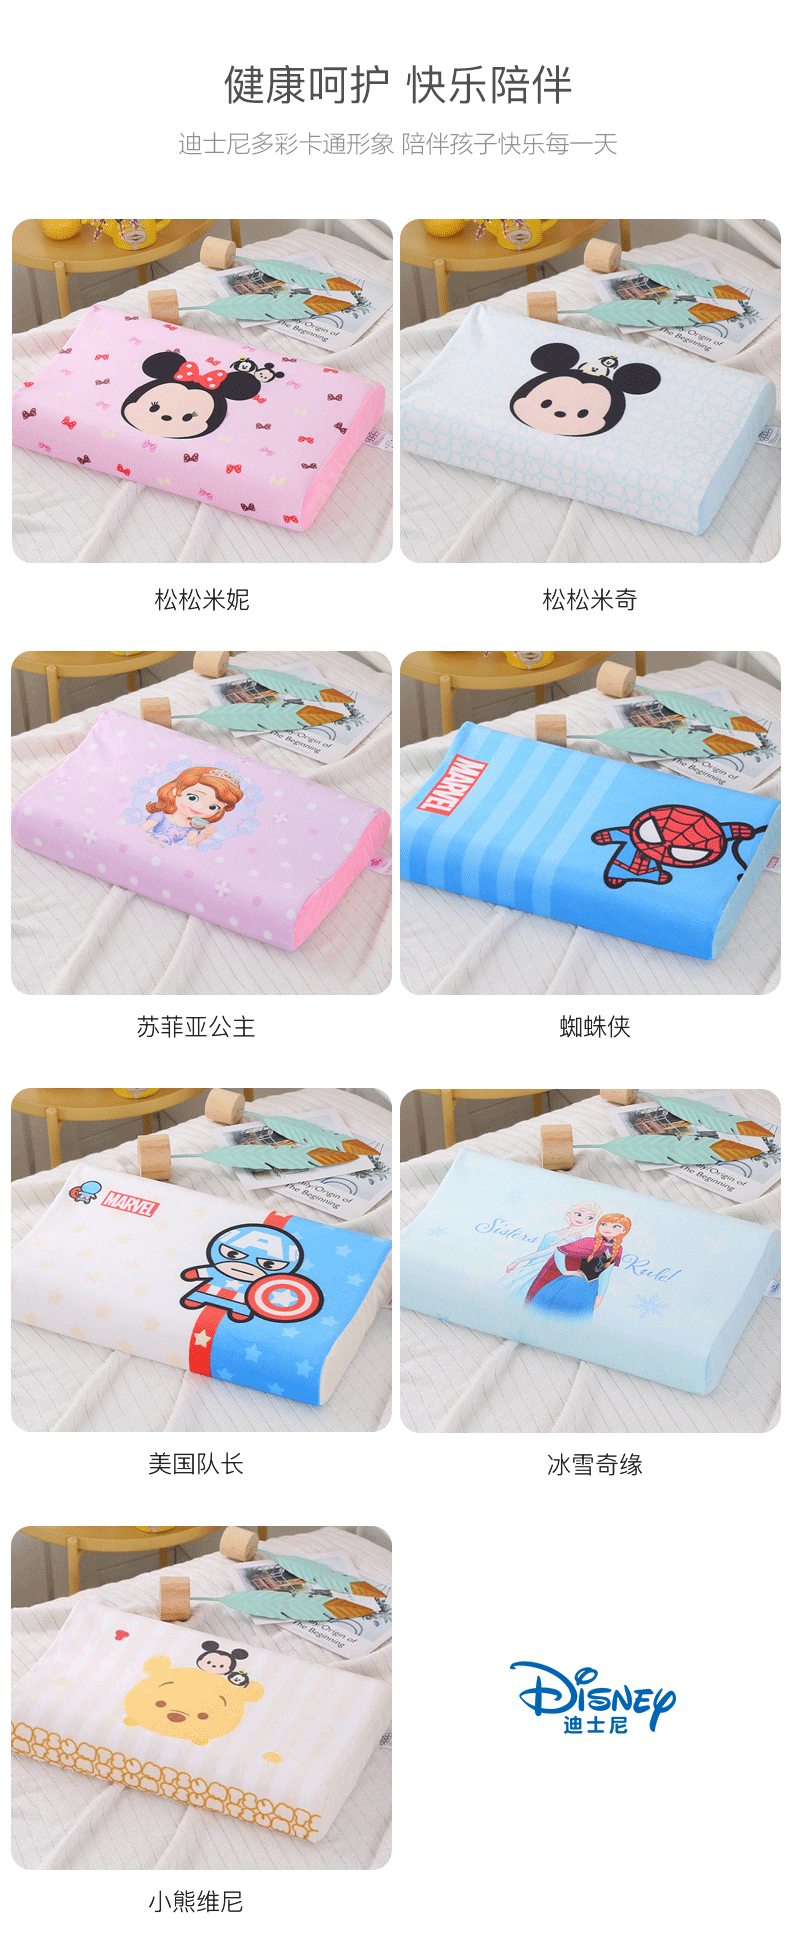 迪士尼/DISNEY 乳胶枕 泰国天然儿童乳胶枕头 婴儿枕芯 TT003PL(3-6岁)